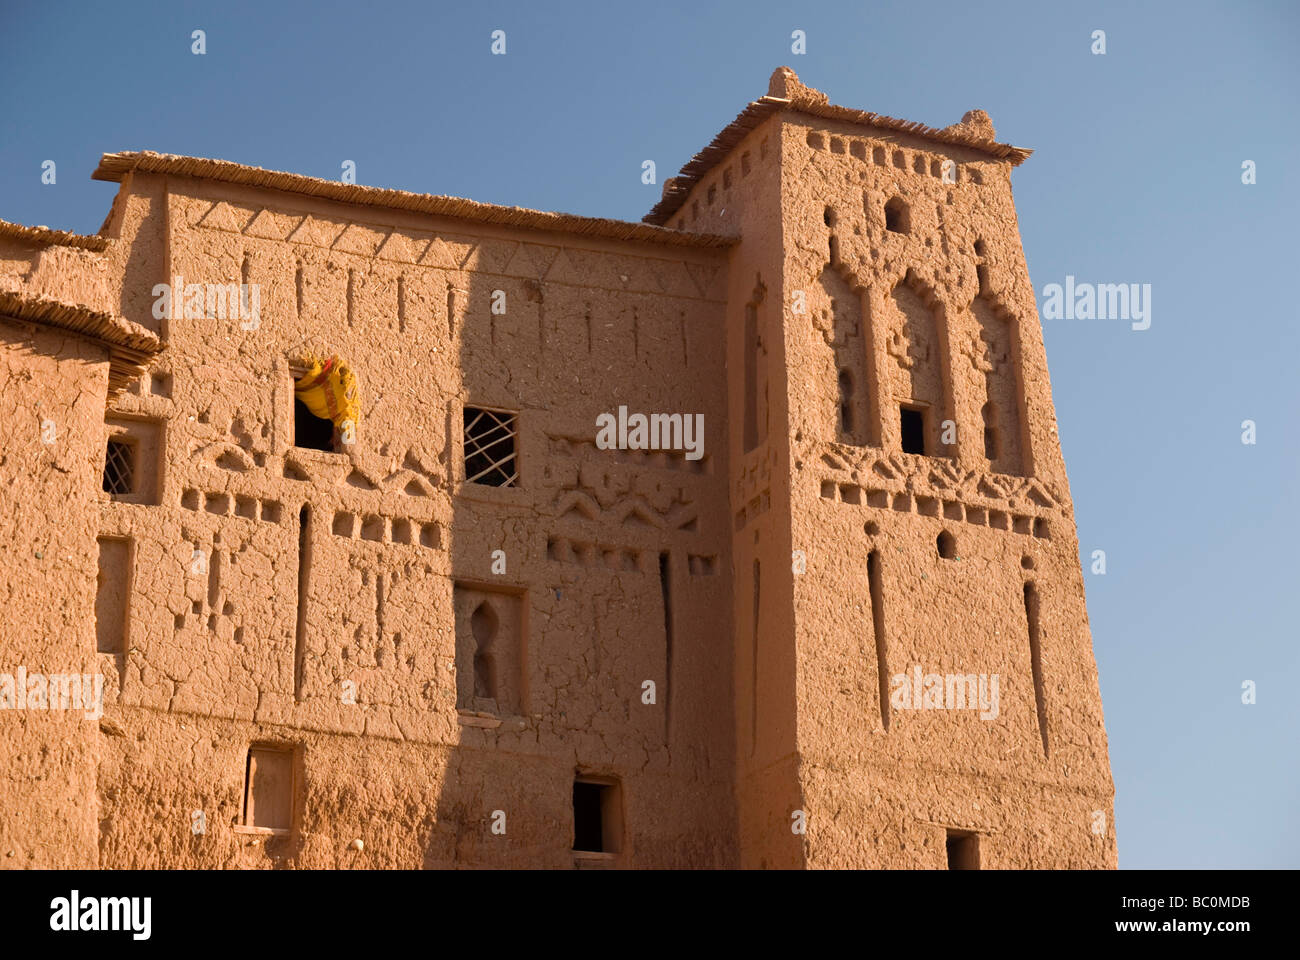 Une tour d'une Kasbah au sein de l'UNESCO World Heritage site de Ait Ben Haddou maroc afrique du nord au coucher du soleil Banque D'Images